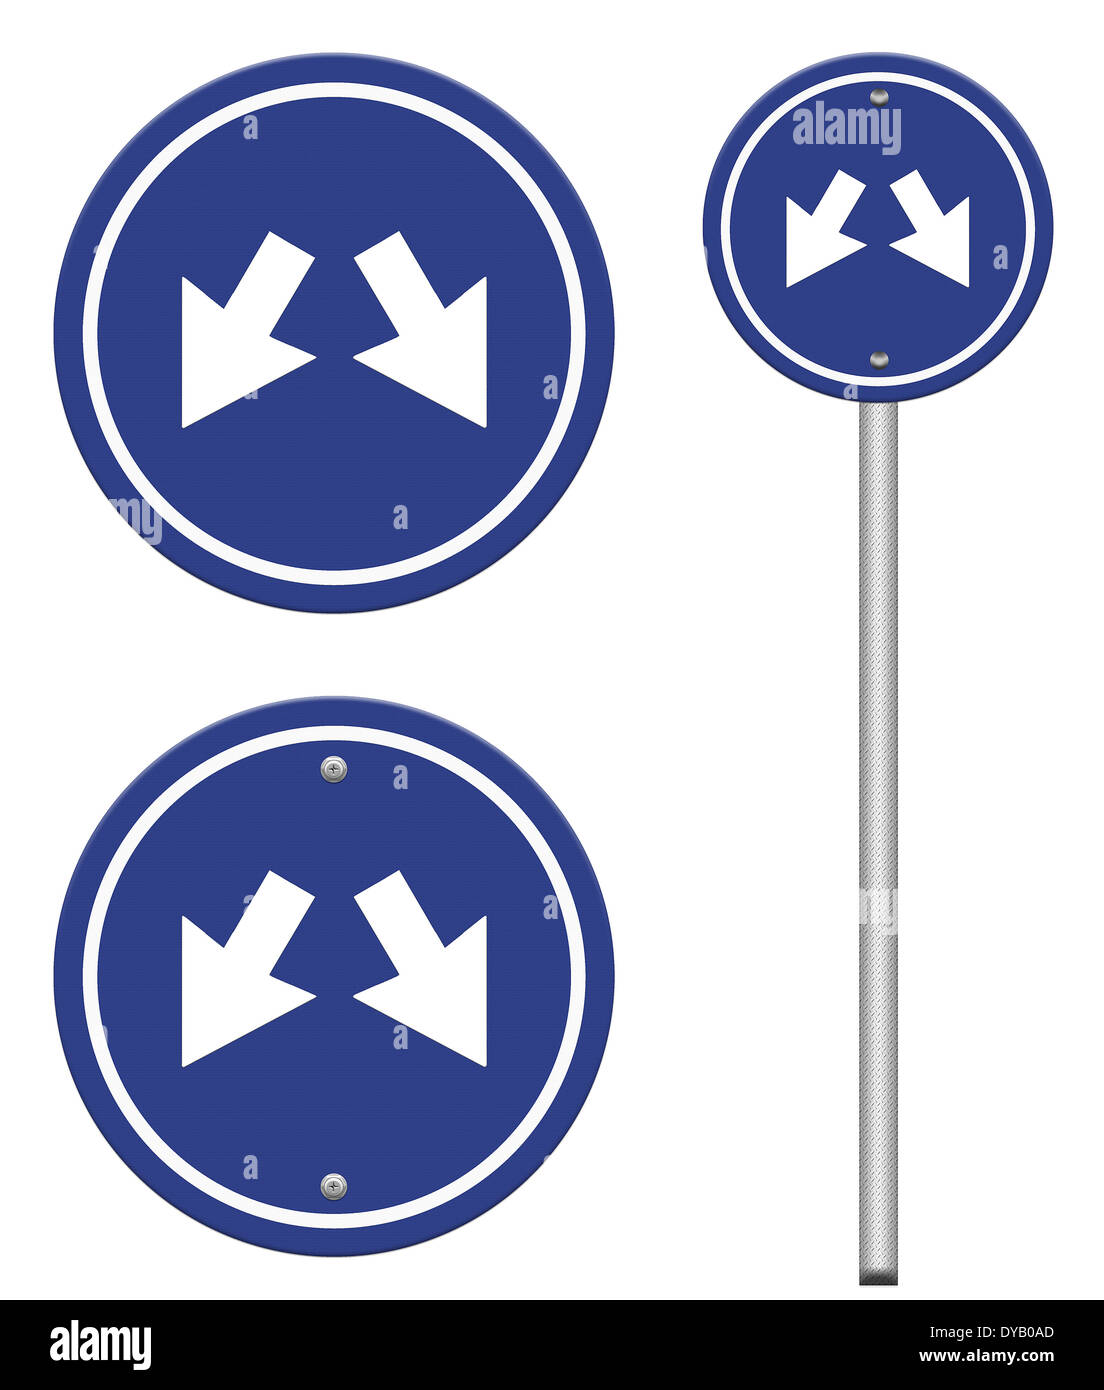 Blaues Schild mit zwei Pfeilen - zwei Richtungen auf einer blauen Straße unterzeichnen, Teil einer Serie. Stockfoto